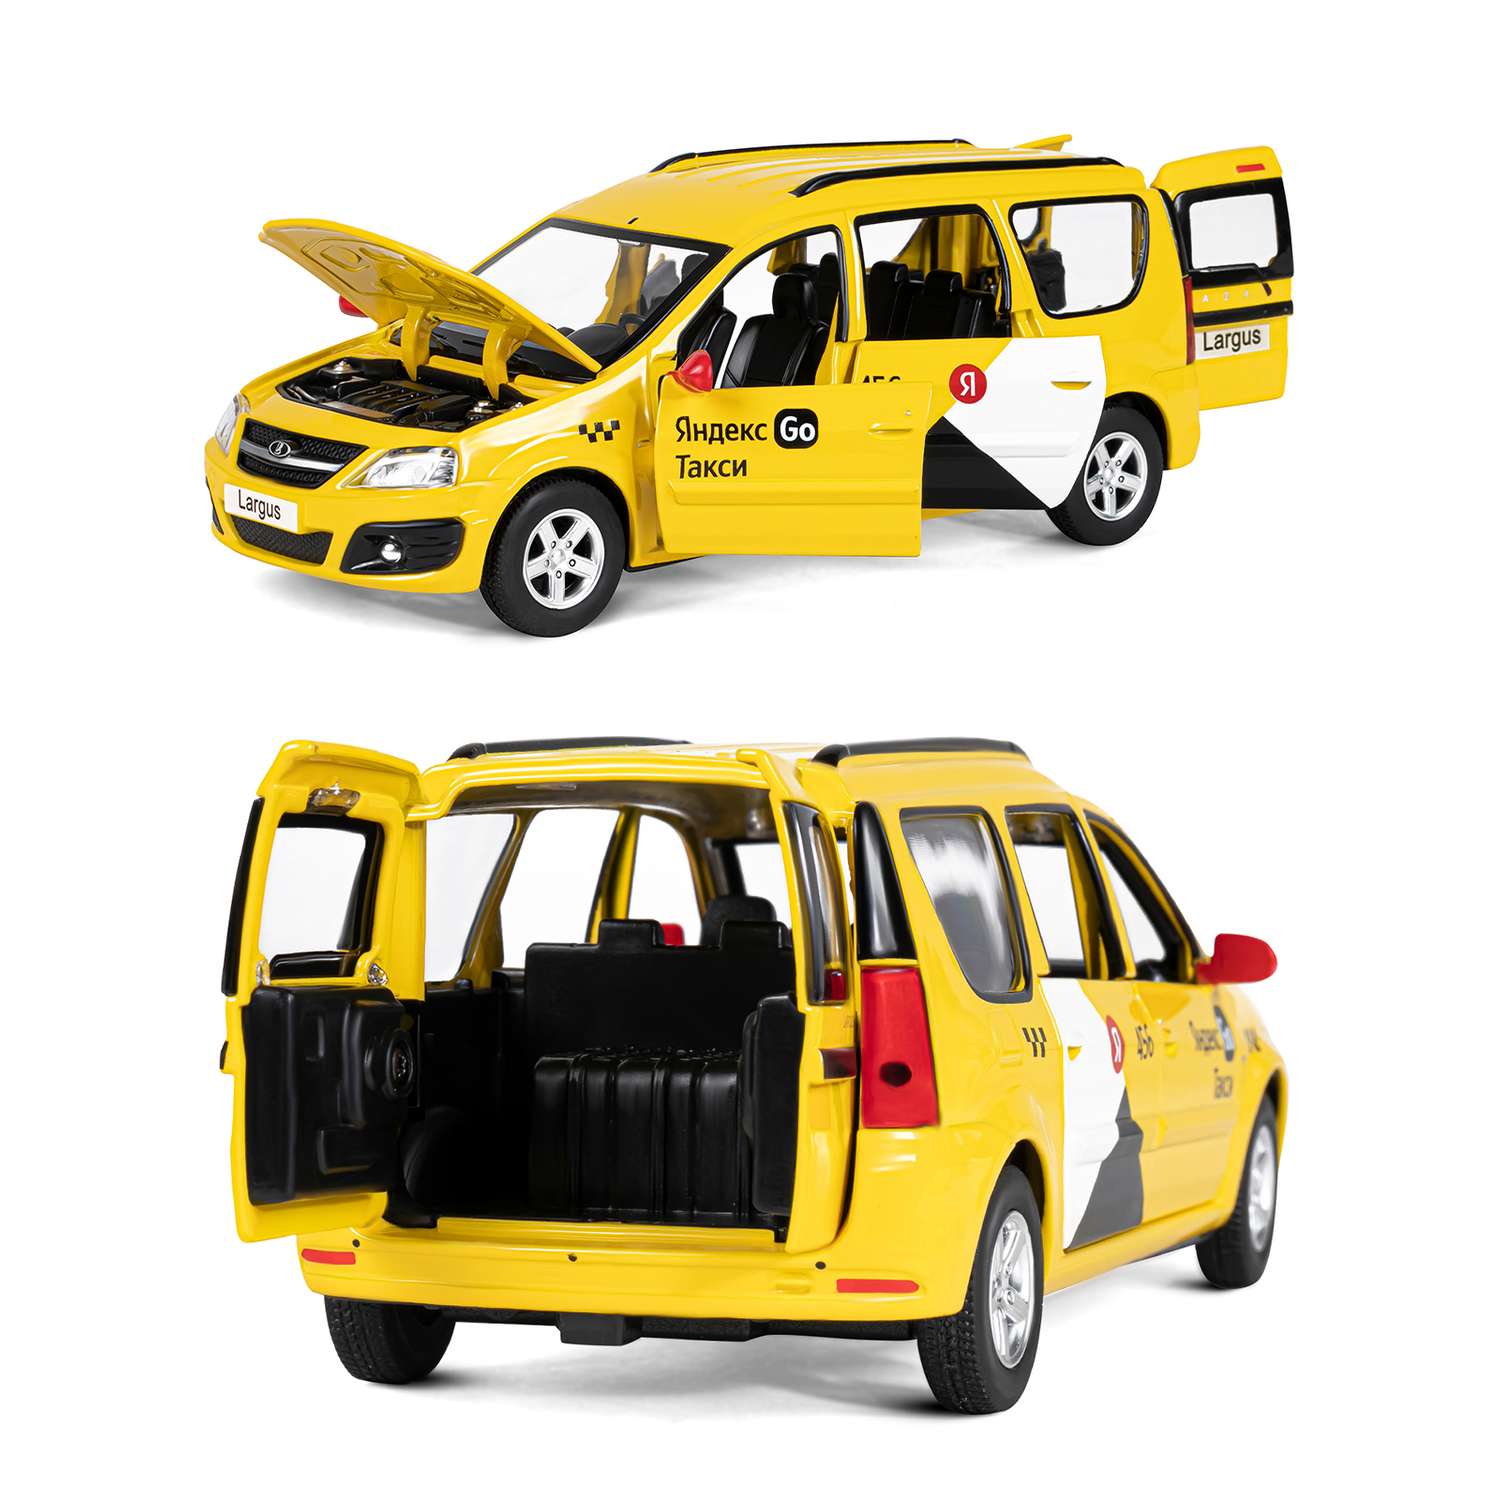 Машинка металлическая Яндекс GO игрушка детская LADA LARGUS 1:24 желтый Озвучено Алисой JB1251481 - фото 7